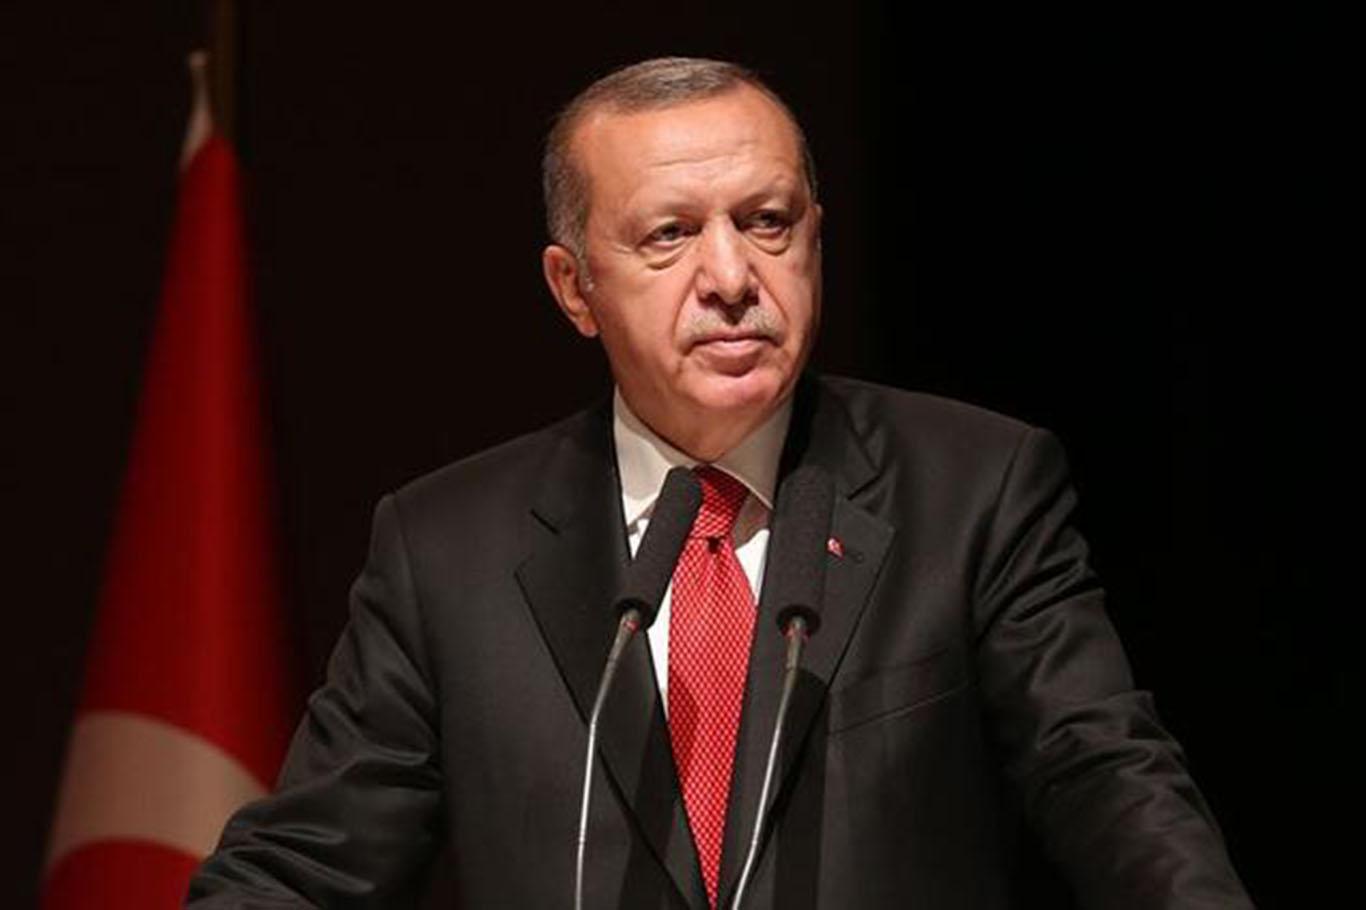 Cumhurbaşkanı Erdoğan: Tematik kamp faaliyetleri devam edecek